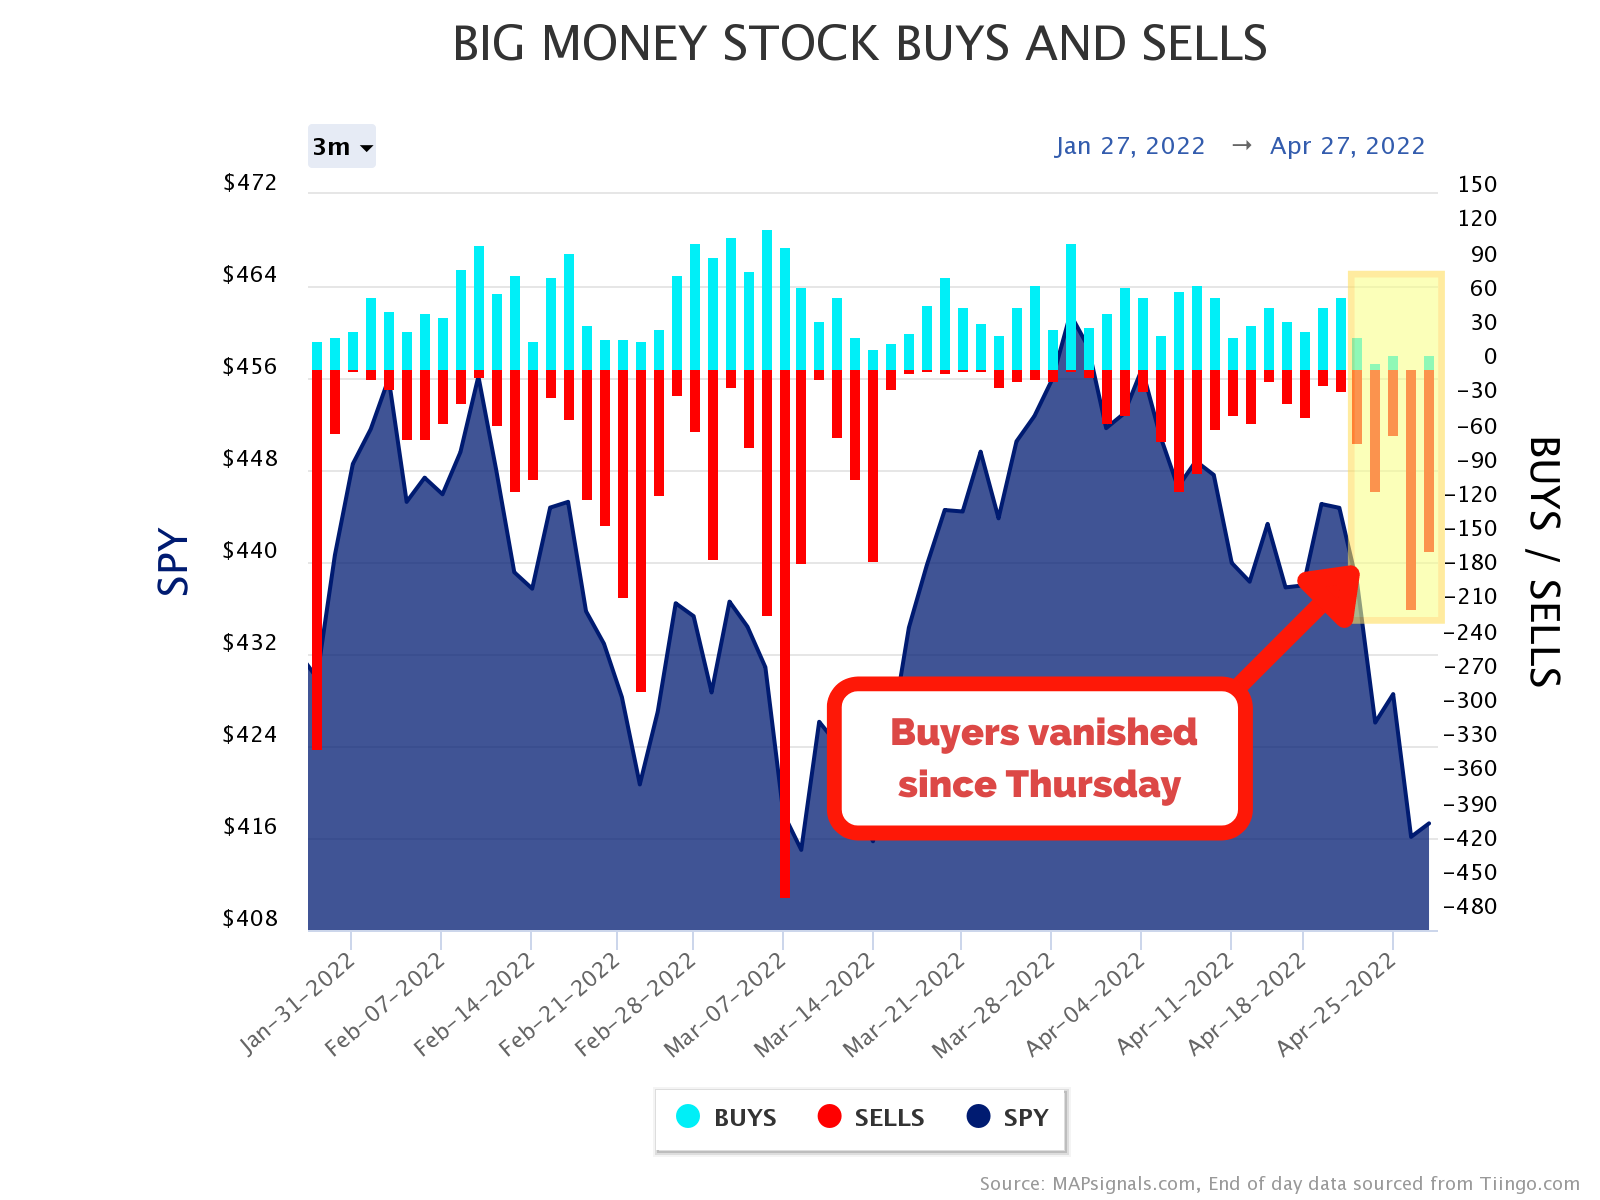 Big Money stock buys and sells | Buyers Vanished